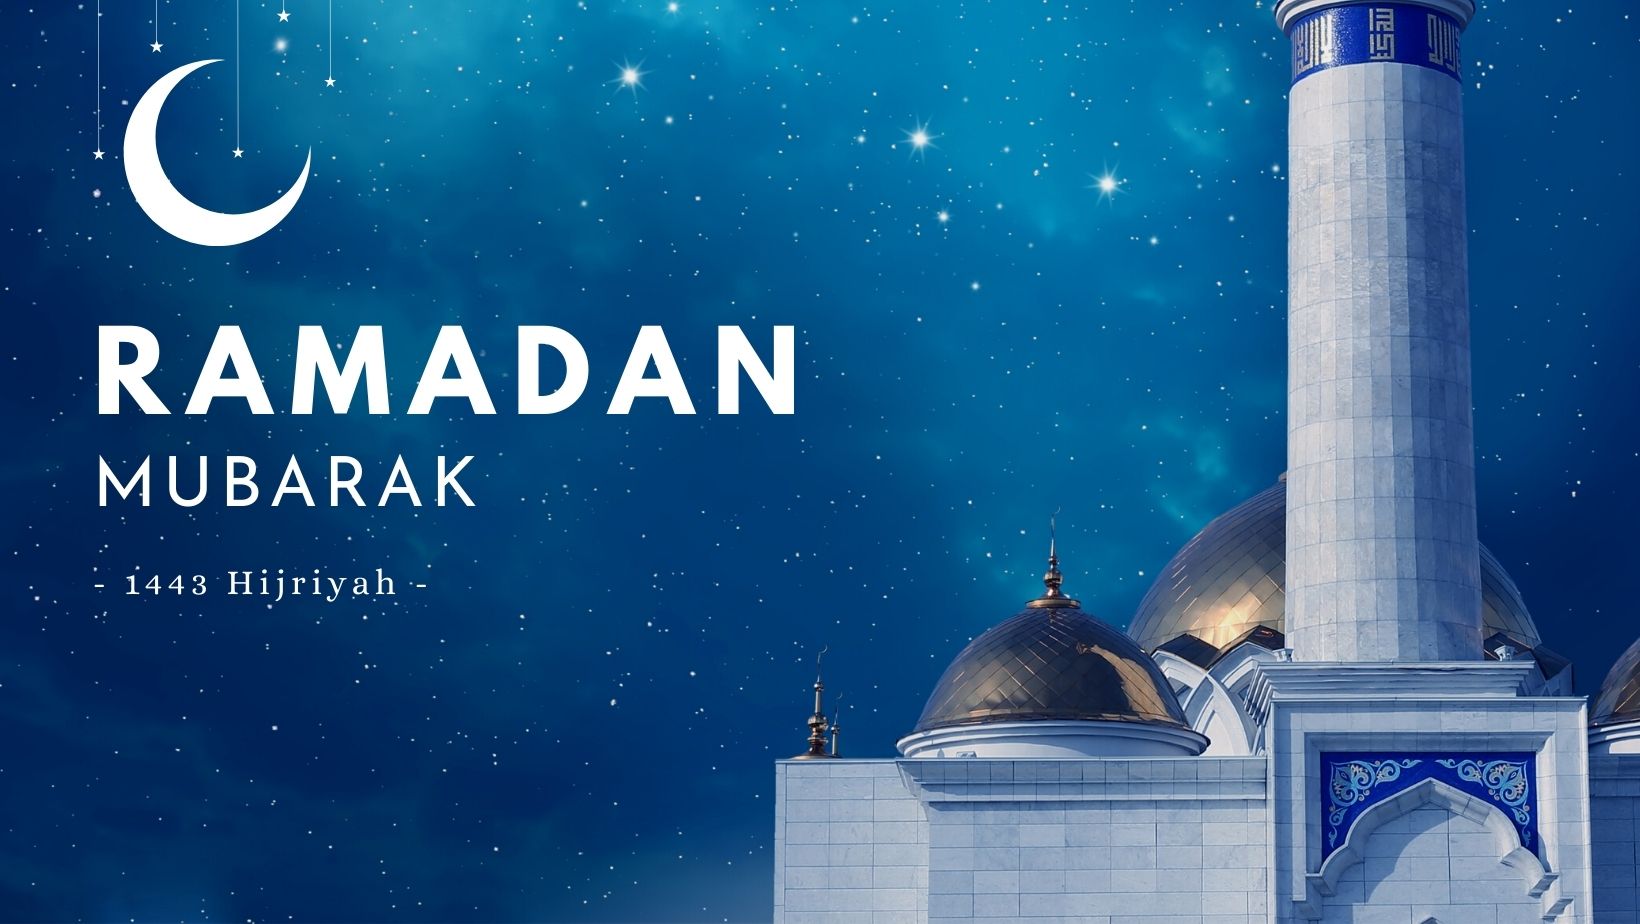 Beautiful Ramadan Mubarak Facebook Cover Photos)